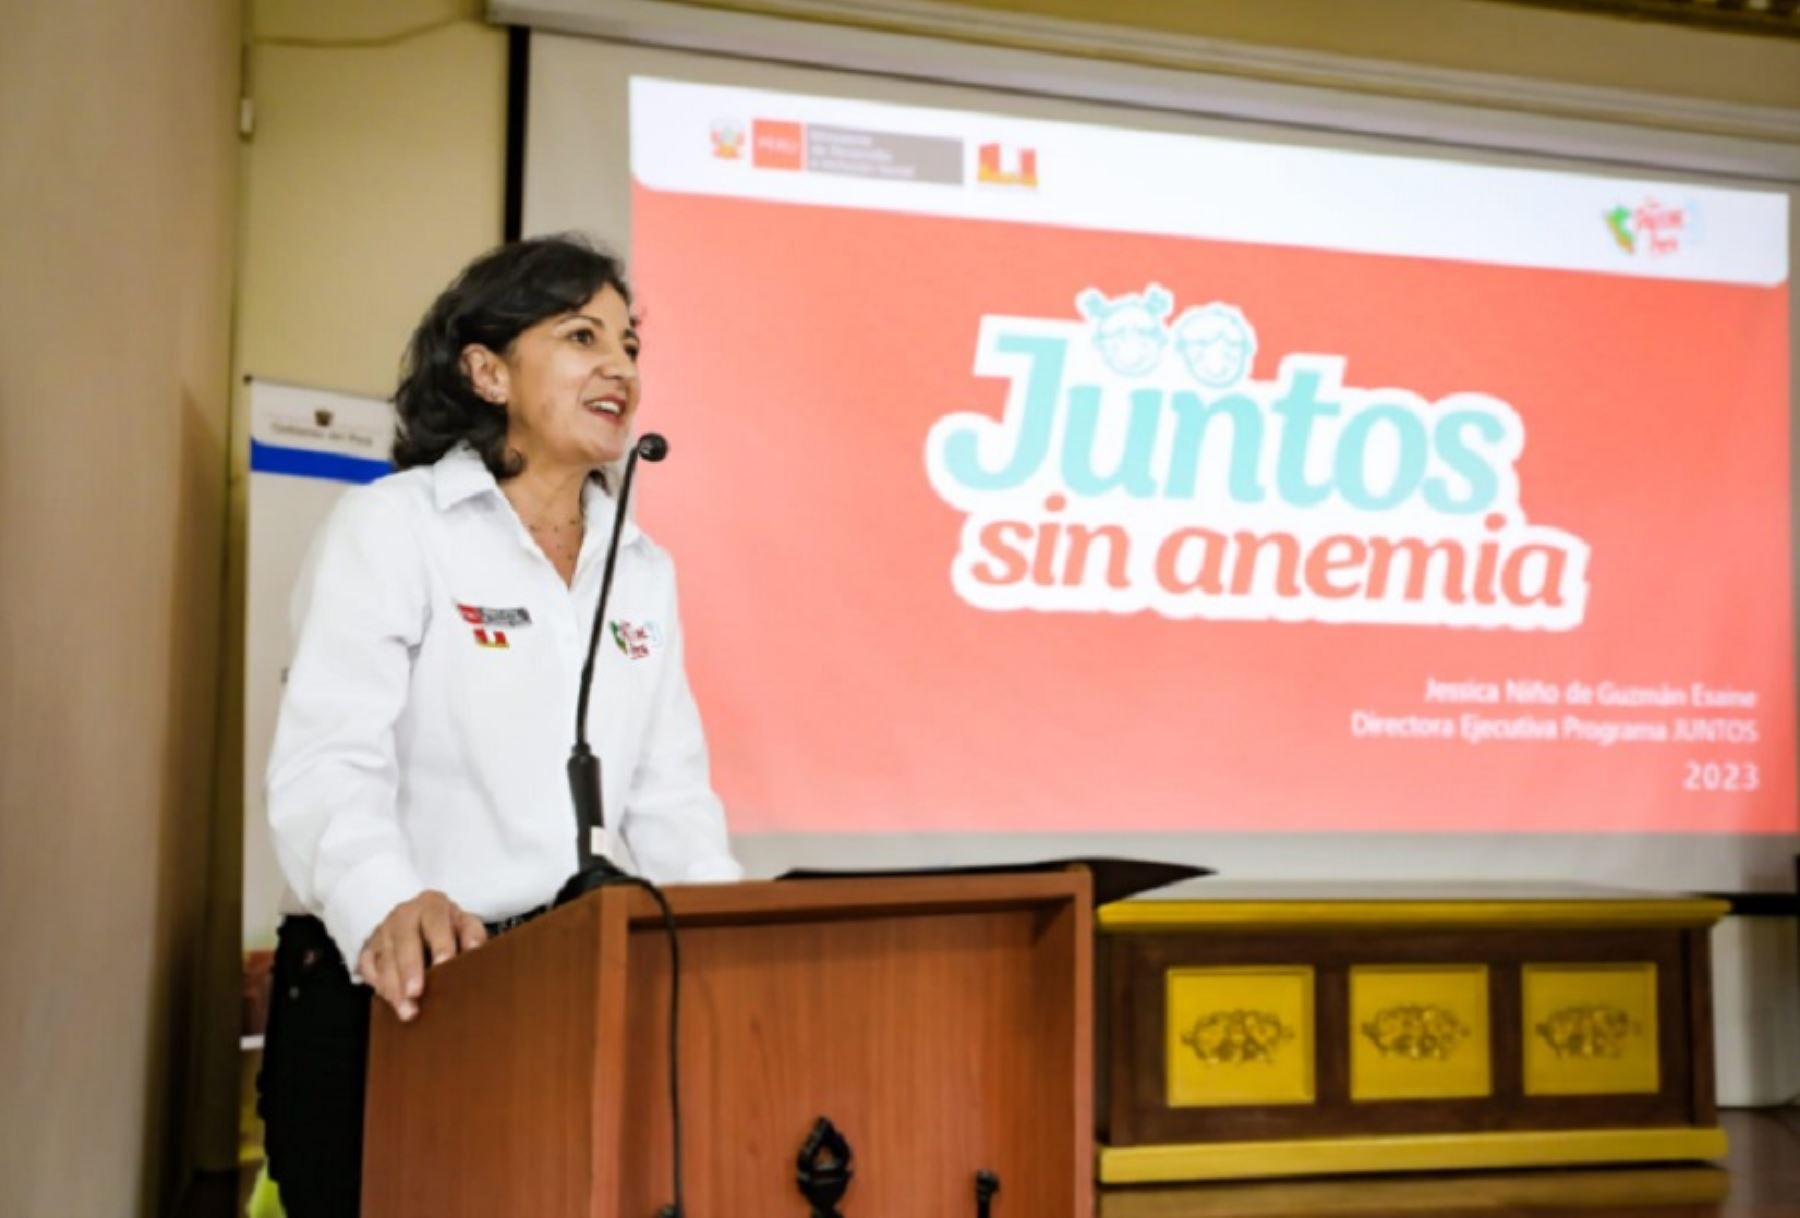 La directora ejecutiva del programa Juntos, Jessica Niño de Guzmán presentó el proyecto "Juntos sin anemia" durante la firma del Pacto Regional por el Desarrollo Infantil Temprano que se realizó en la ciudad de Trujillo, provincia de La Libertad.